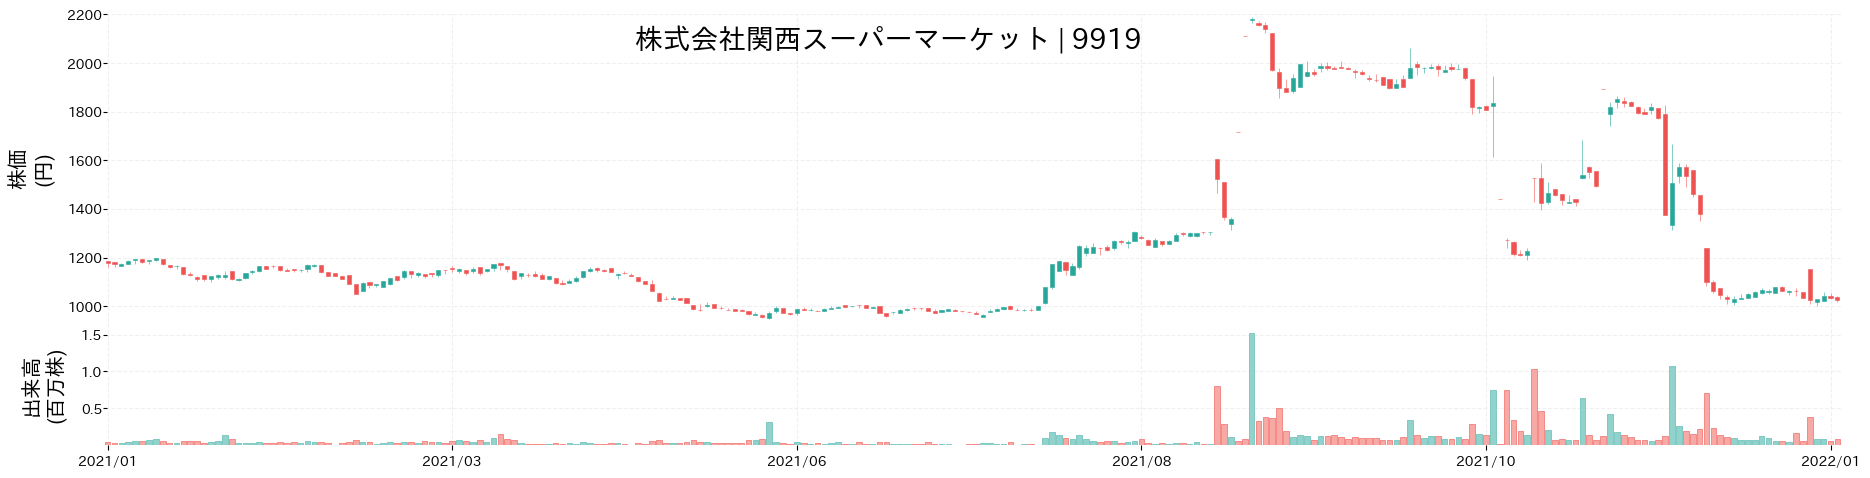 関西スーパーマーケットの株価推移(2021)